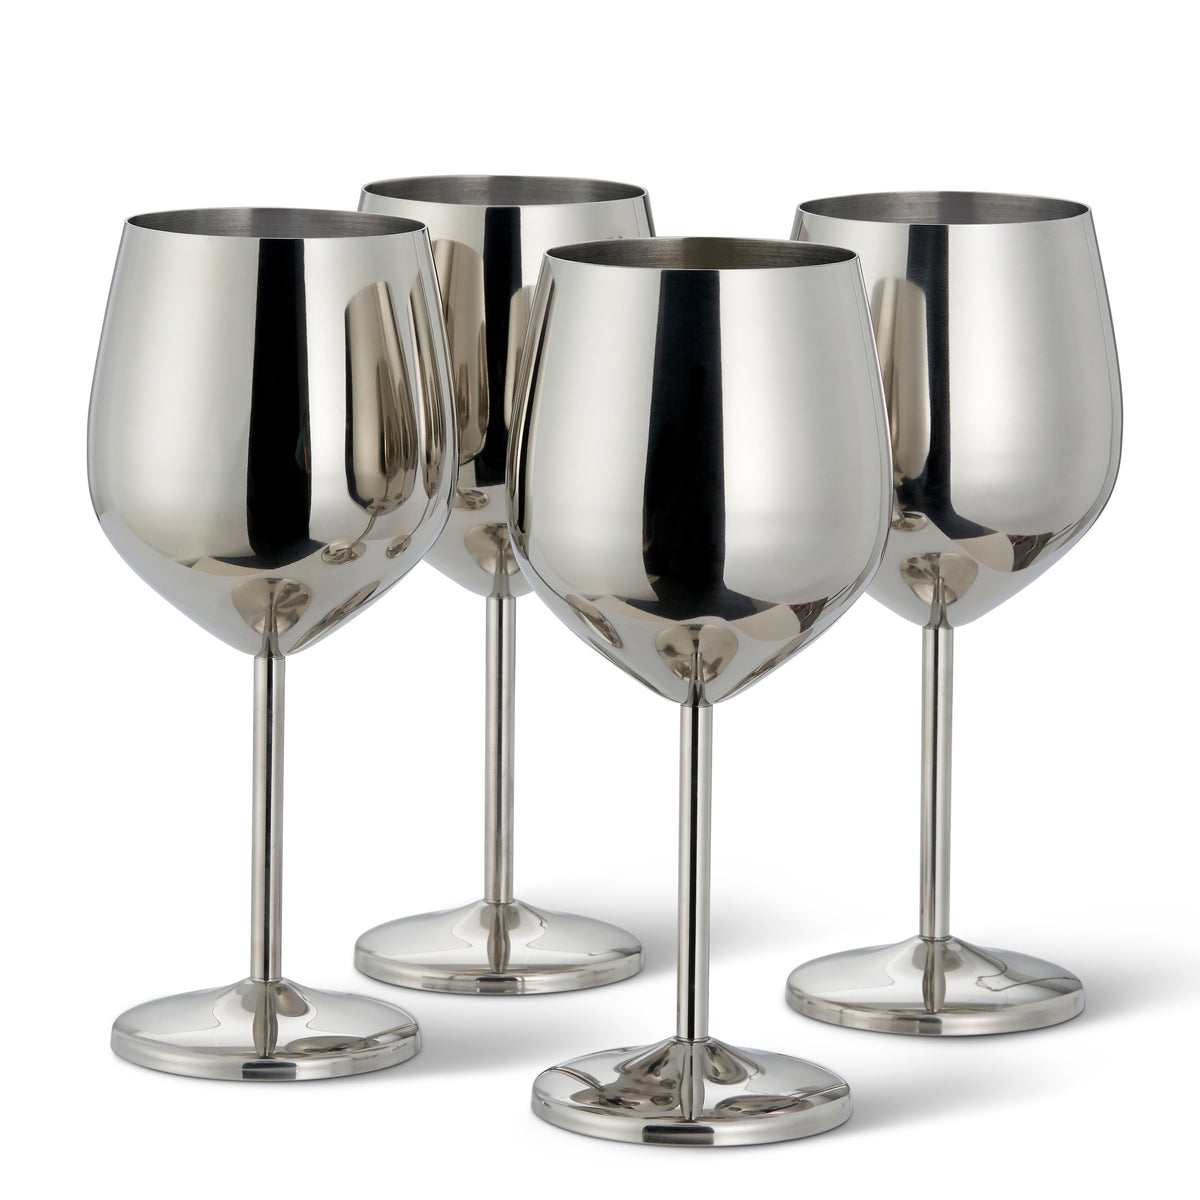 4 Silver Stainless Steel Wine Glasses – Oak & Steel